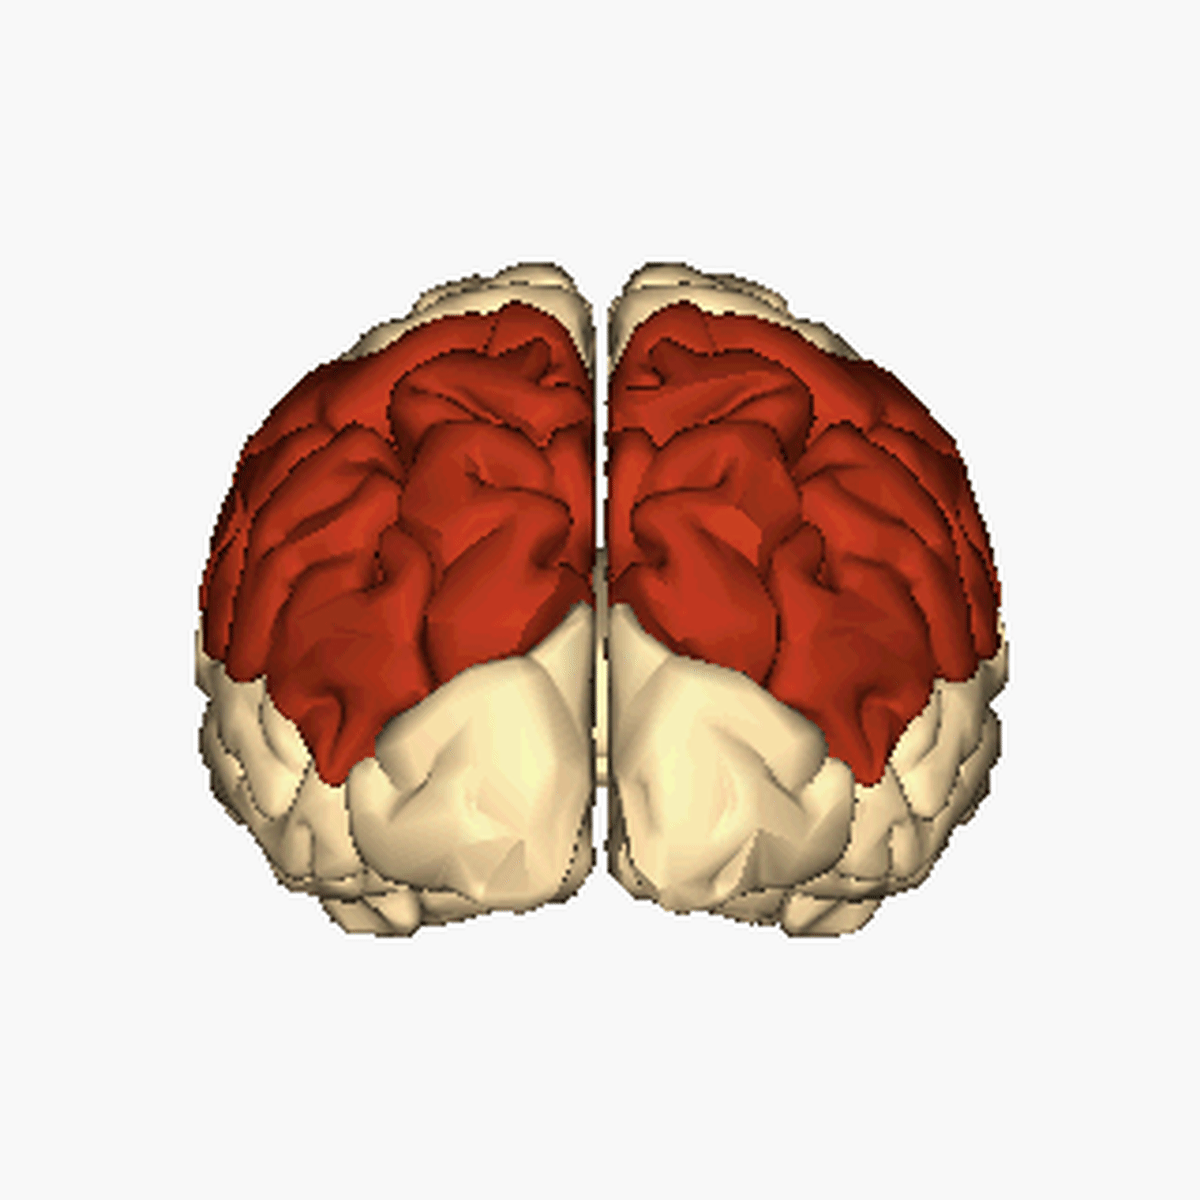 parietal lobes in cerebral hemisphres